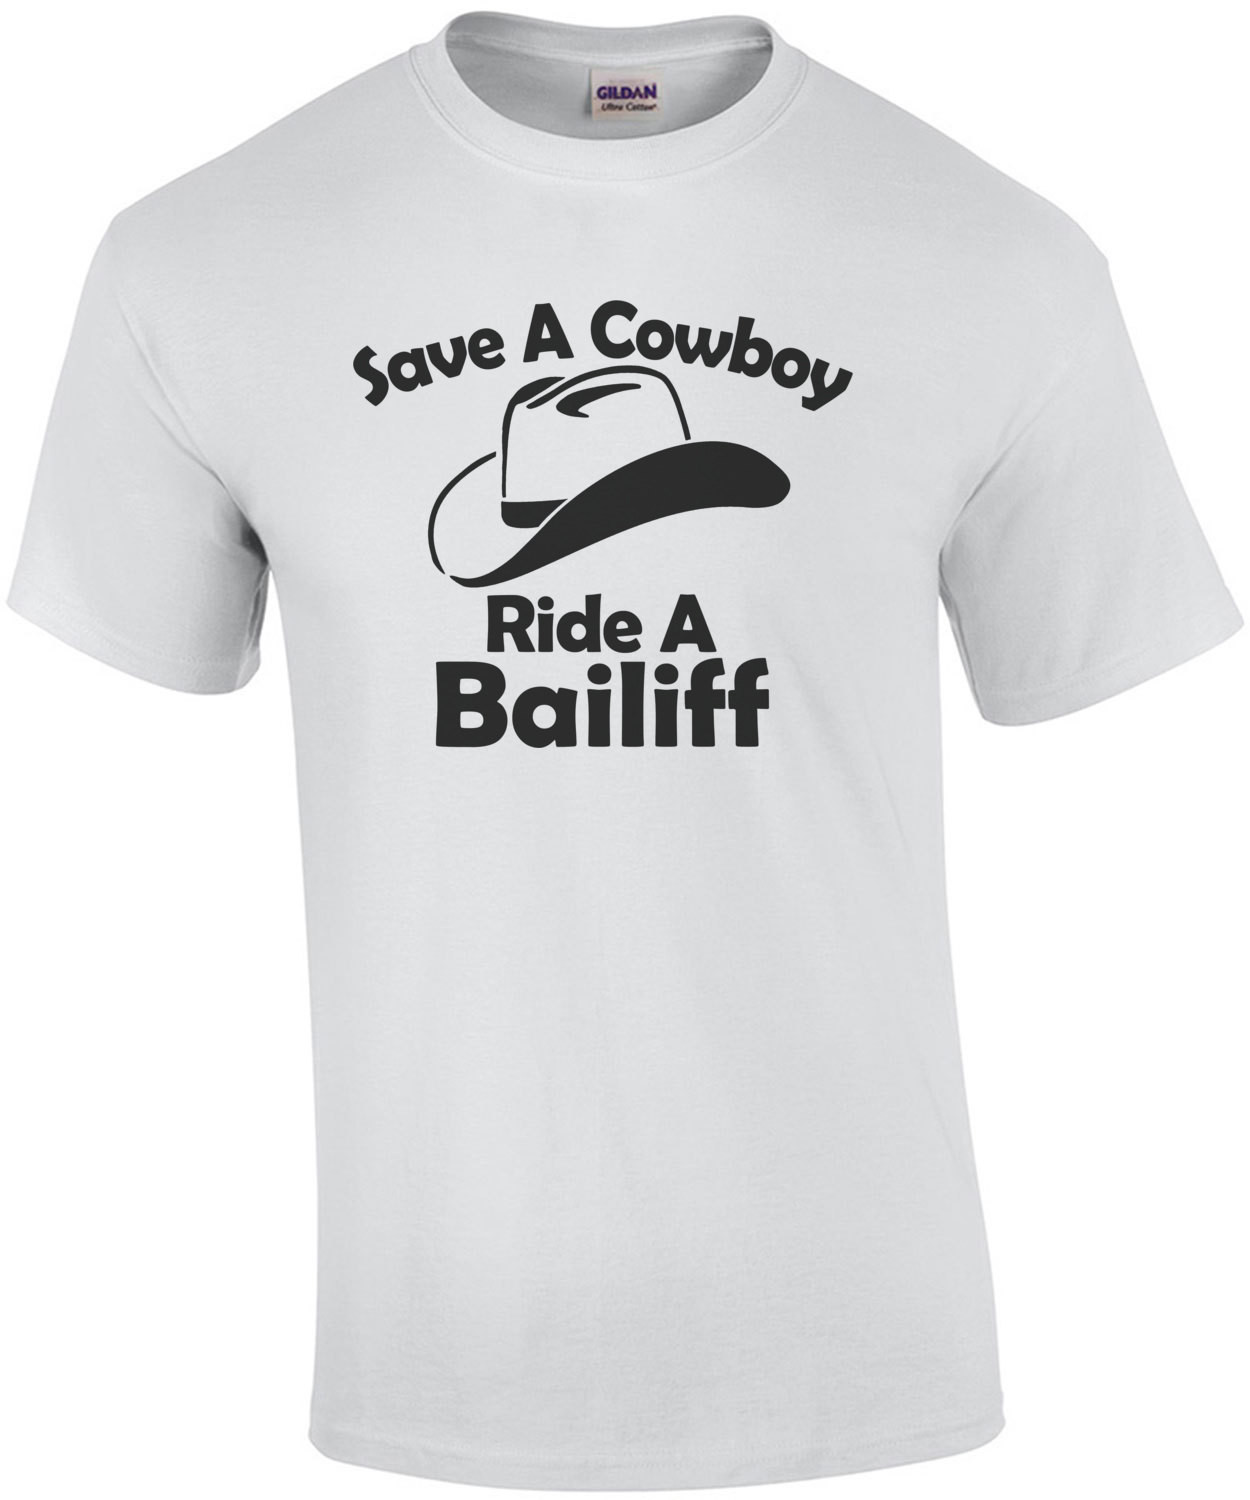 Save A Cowboy Ride A Bailiff T-Shirt